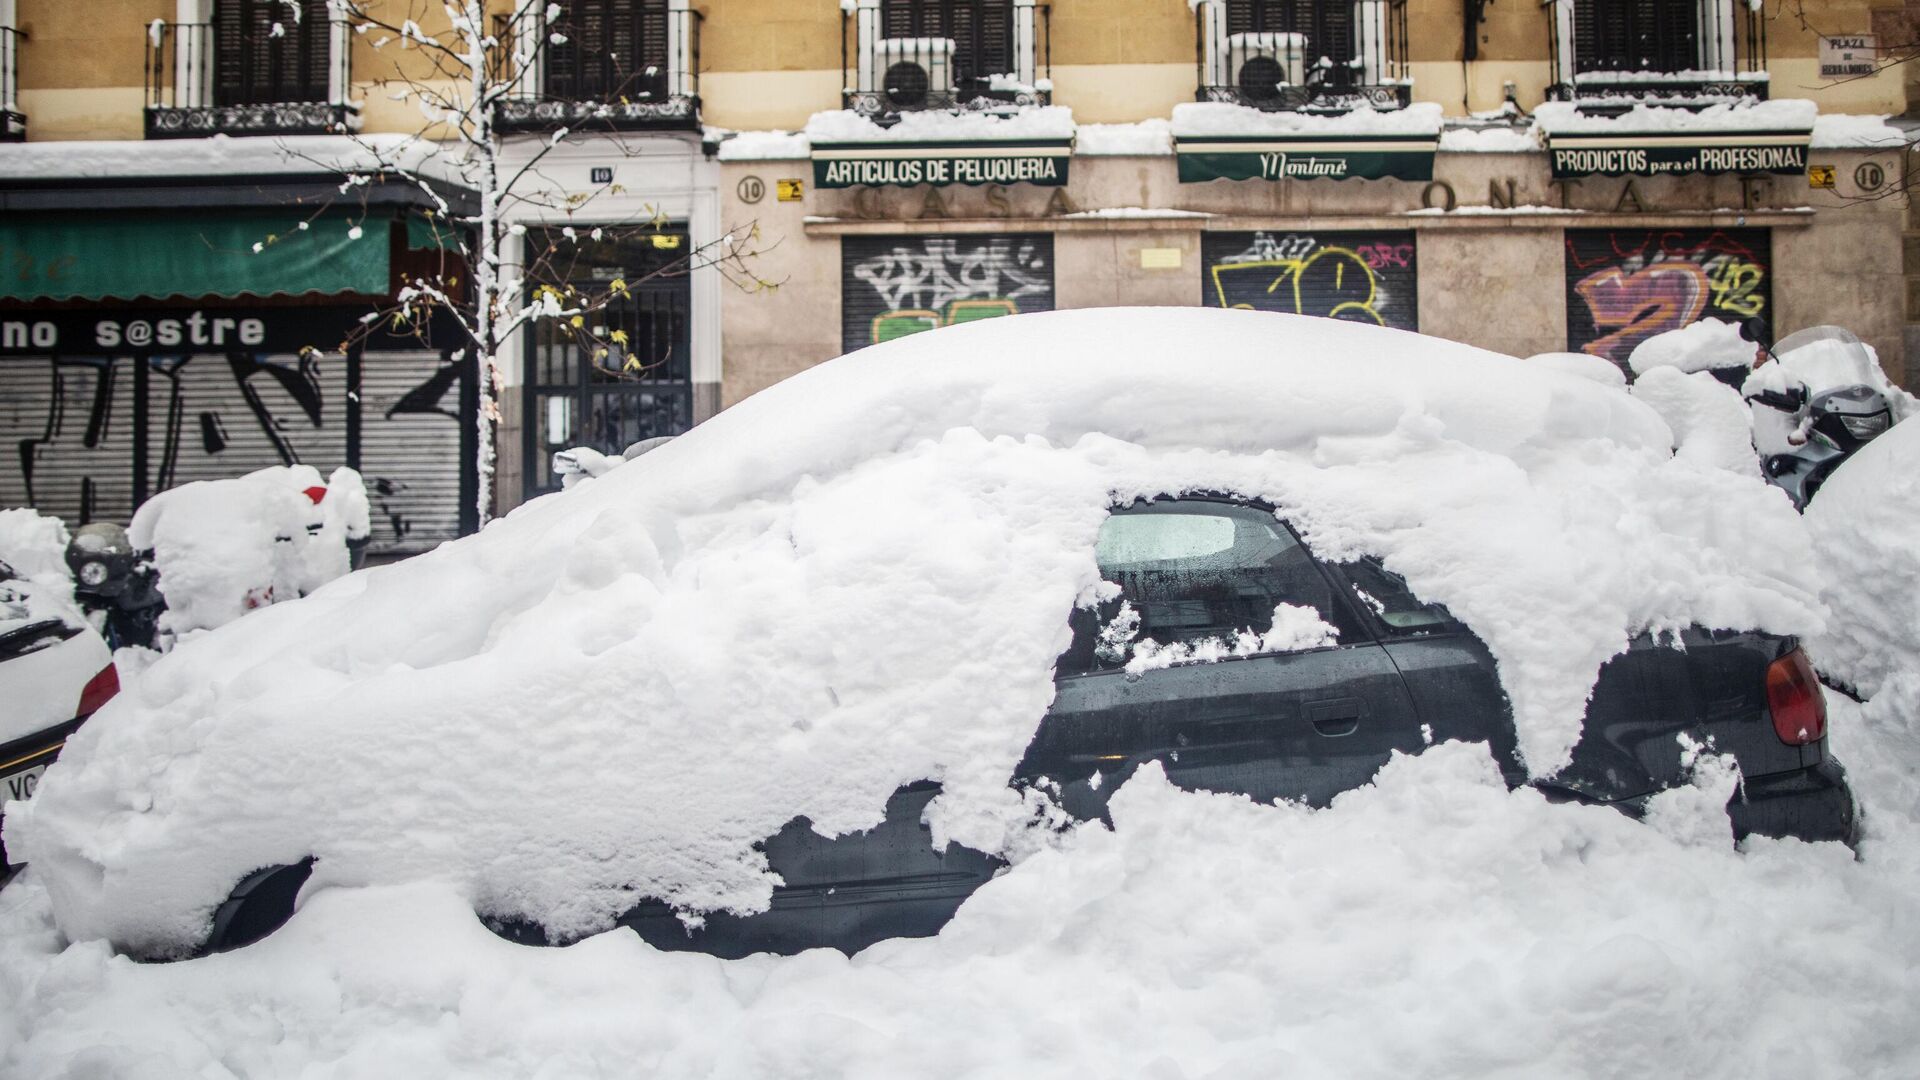 Занесенный снегом автомобиль на одной из улиц в Мадриде - РИА Новости, 1920, 23.01.2021